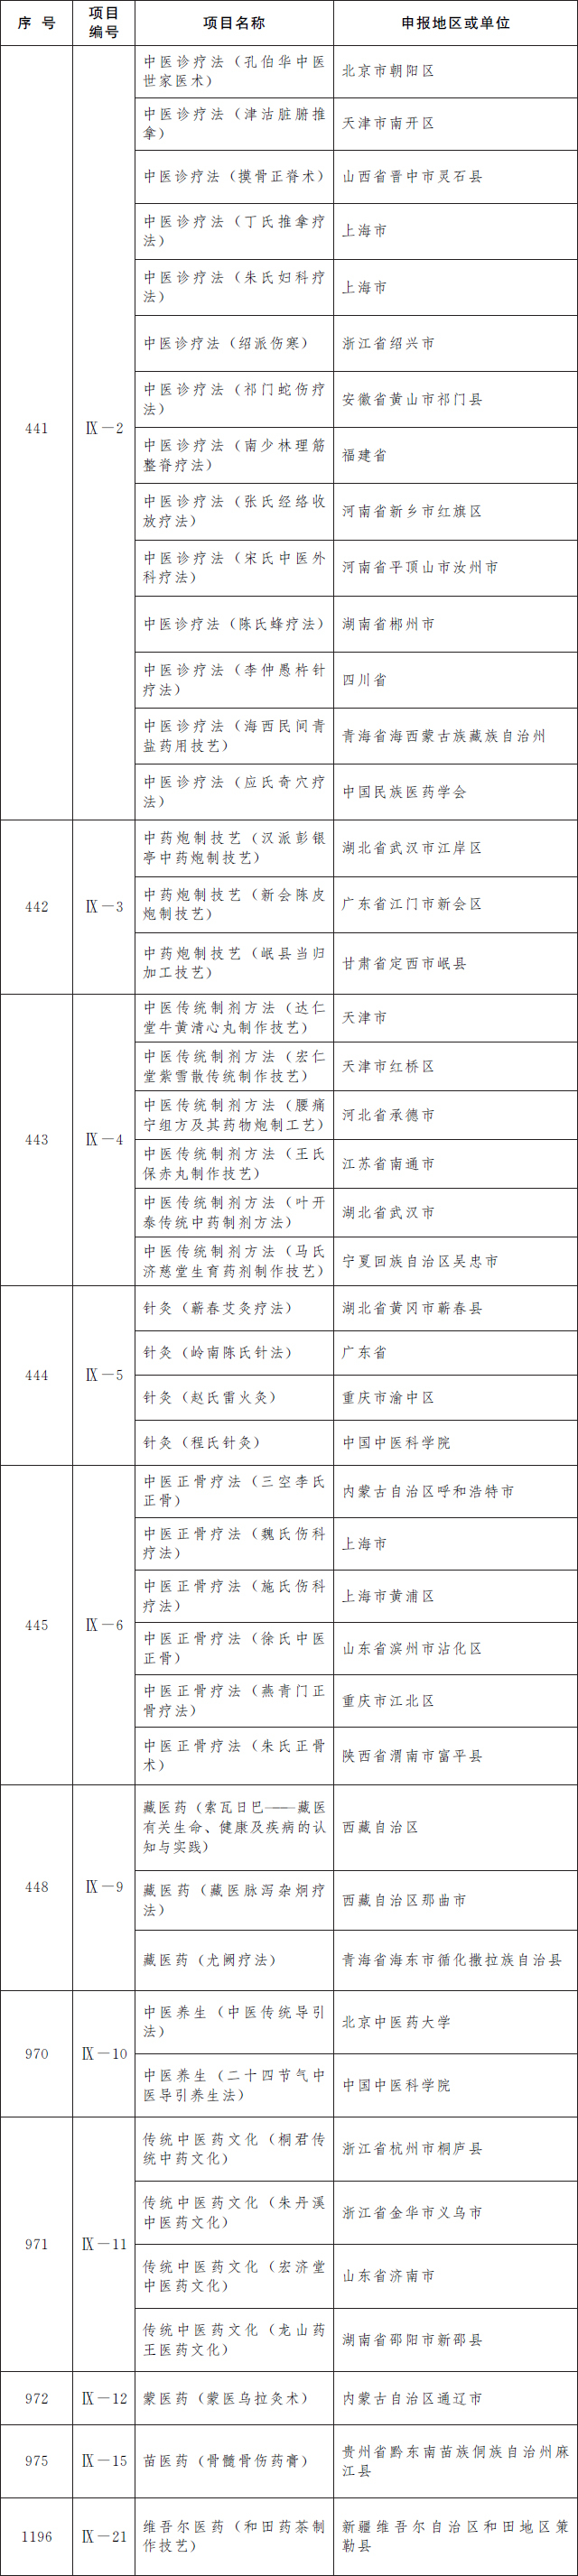 第五批国家级非遗名录公布 鲁绣、曹县木雕、莱芜中元节等上榜